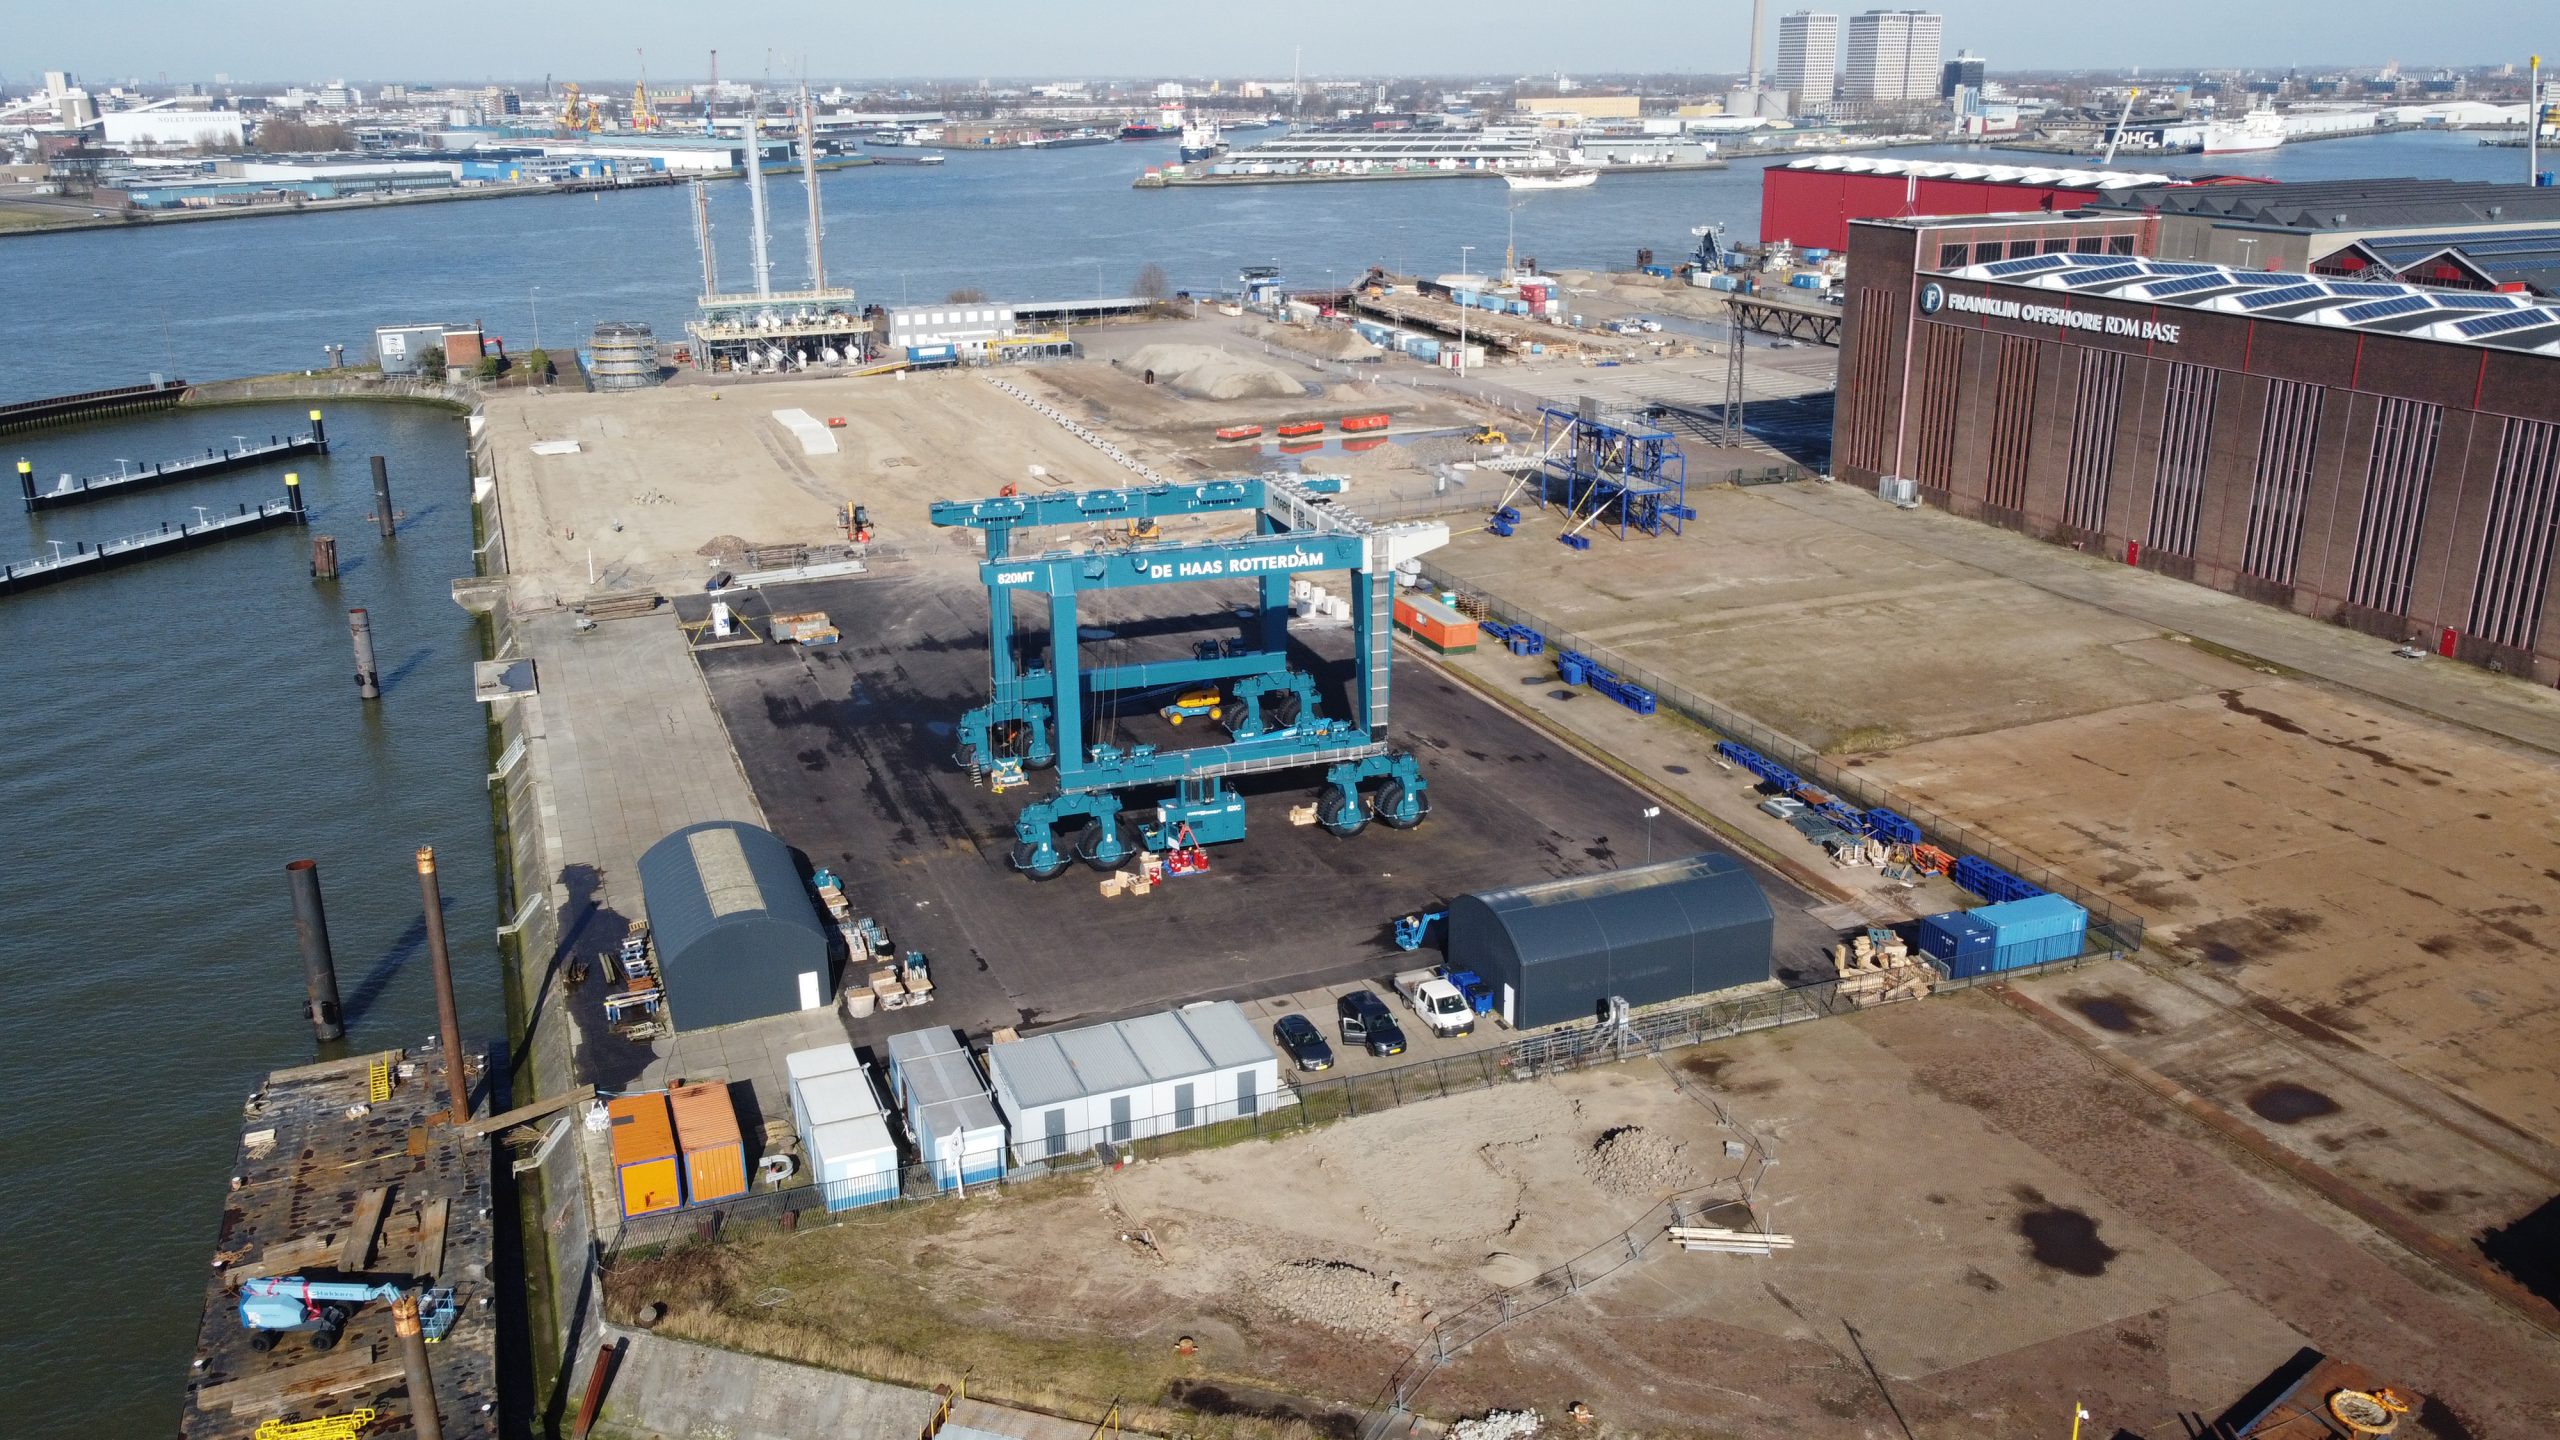 De scheepswerf in de Rotterdamse Waalhaven, met rechts op de foto de Scheepsbouwloods. (Foto Havenbedrijf Rotterdam)